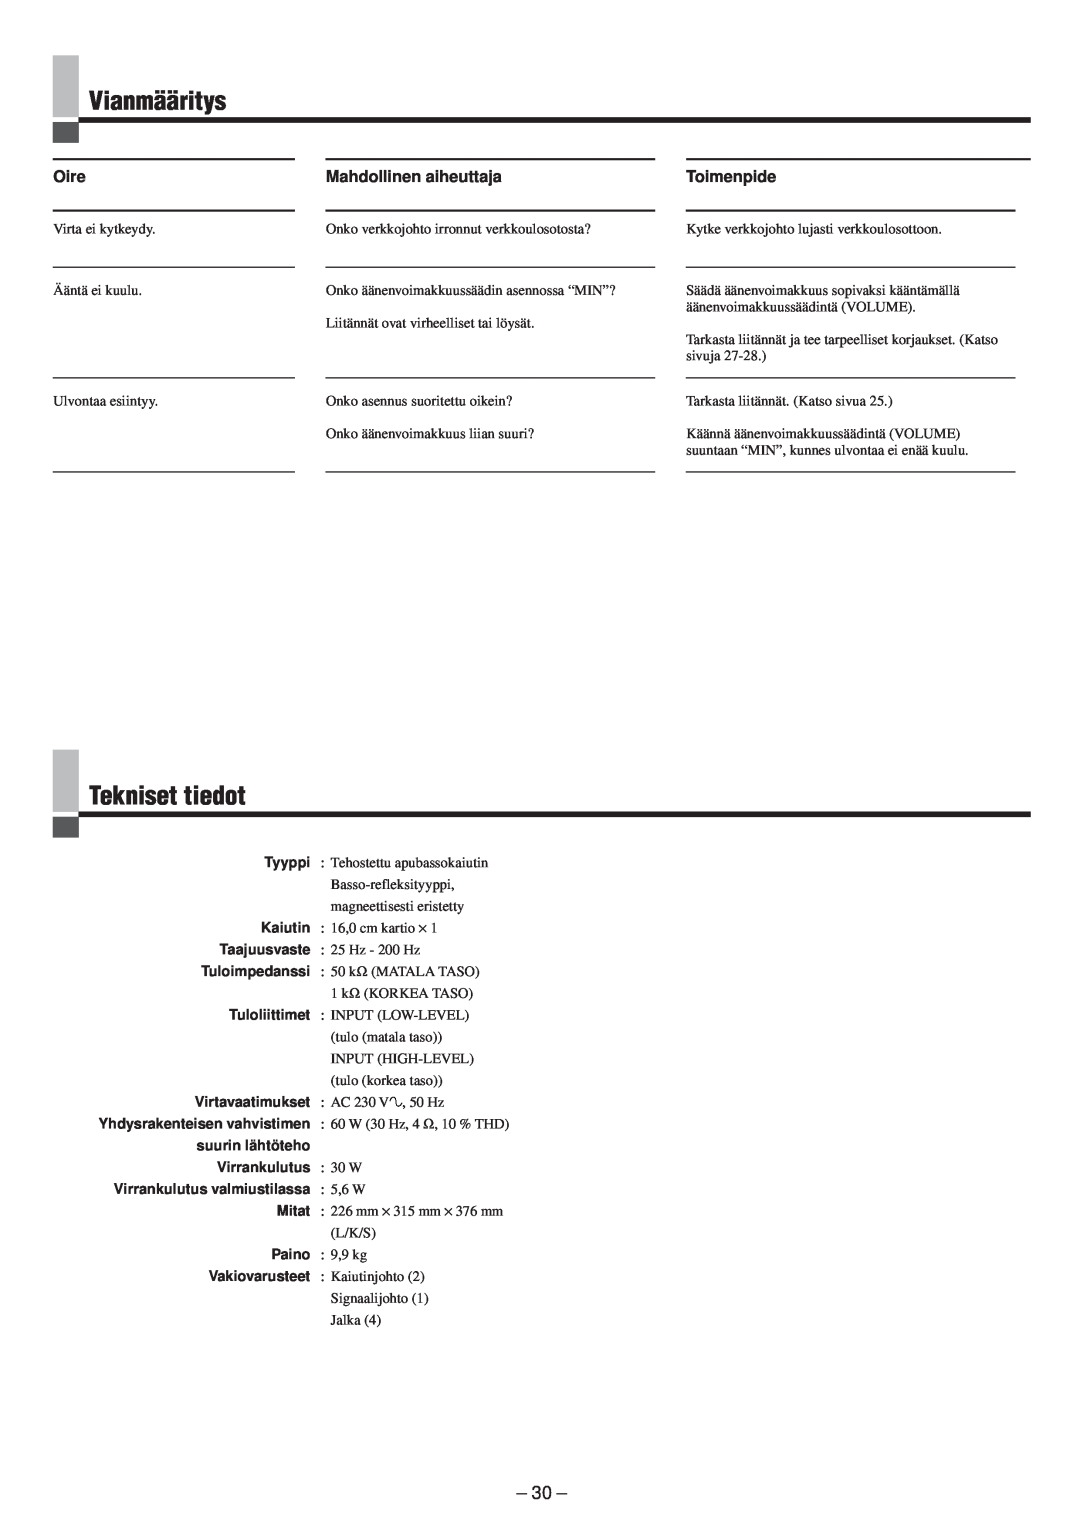 JVC LVT0673-001A manual Vianmääritys, Tekniset tiedot, Oire, Mahdollinen aiheuttaja, Toimenpide 